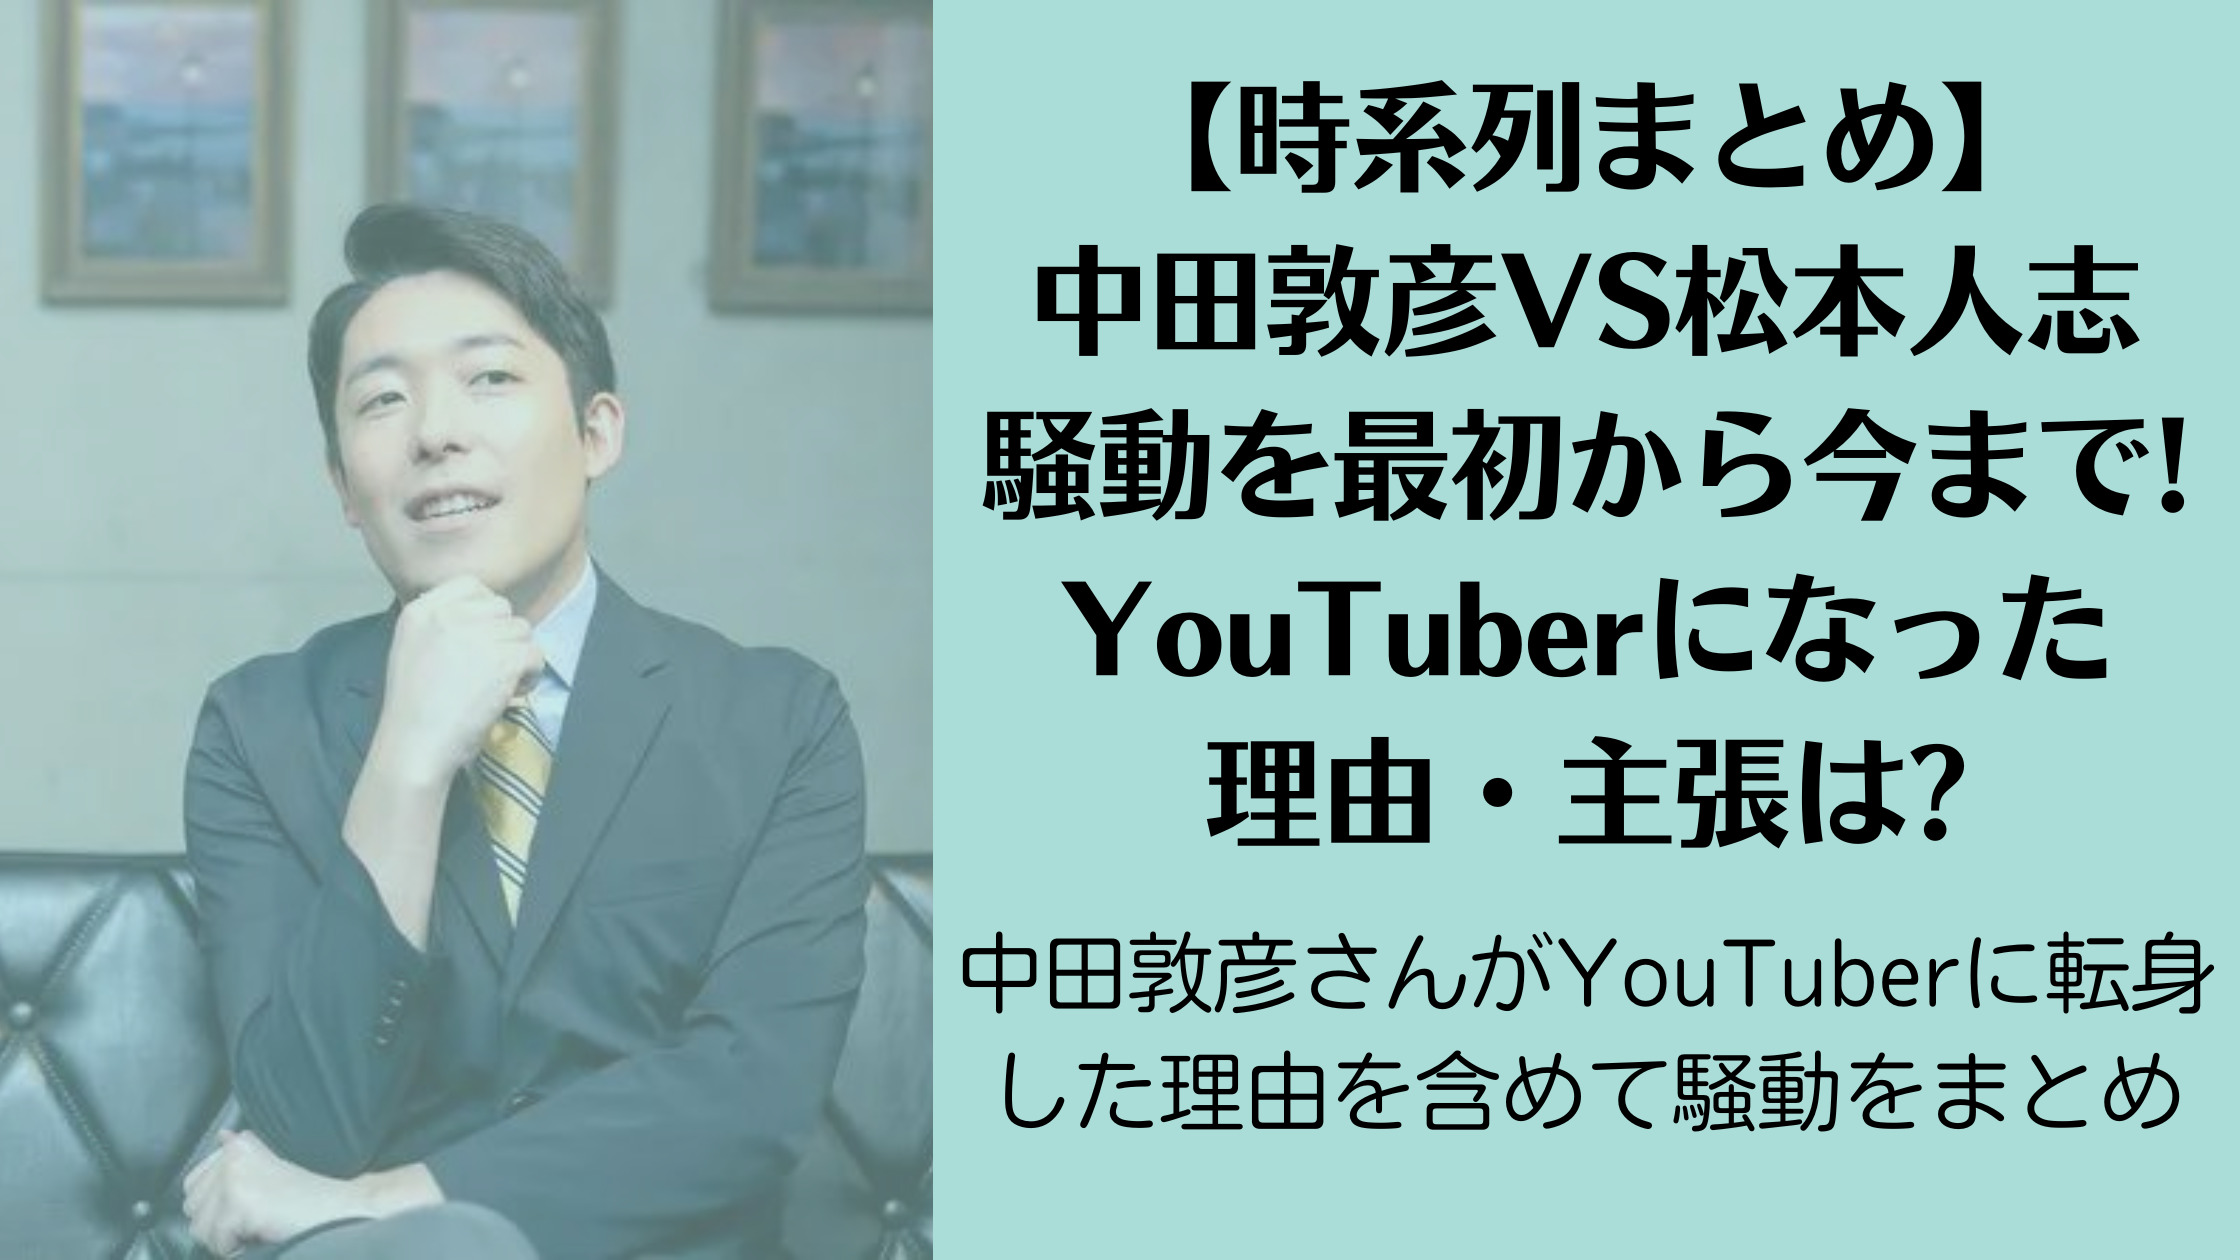 【時系列まとめ】中田敦彦VS松本人志の騒動を最初から今まで!YouTuberになった理由や主張は?